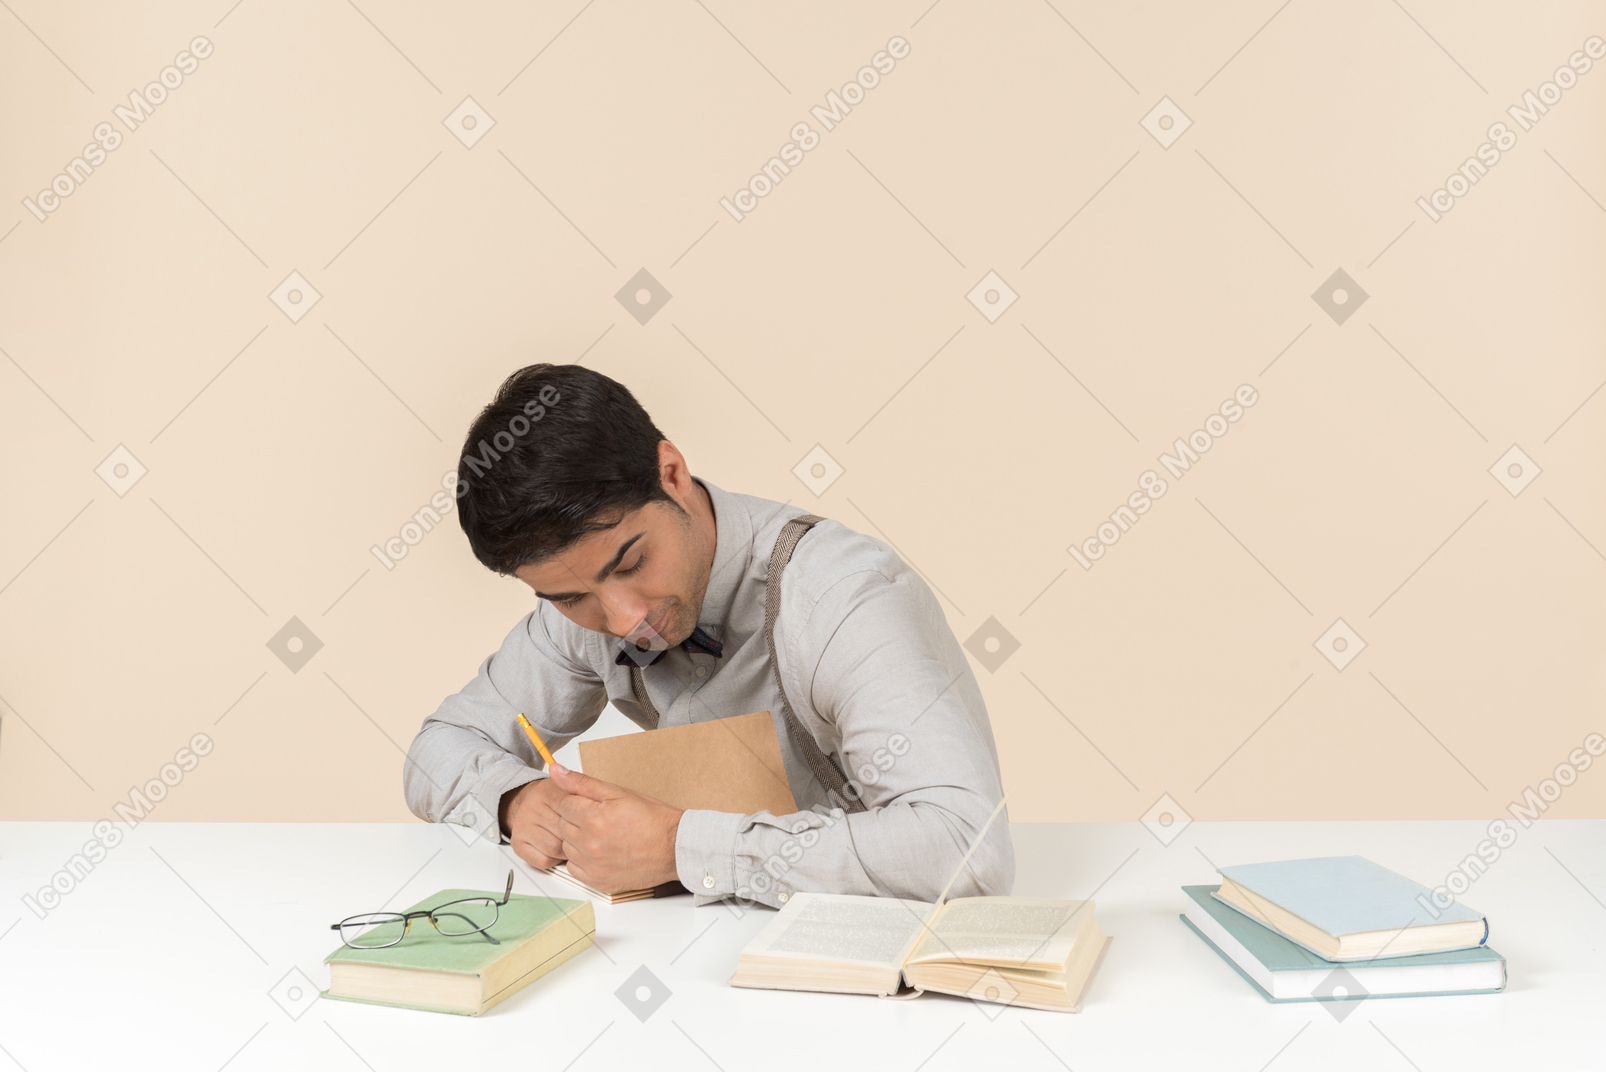 Jeune adulte étudiant assis à la table et écrivant quelque chose dans le livre